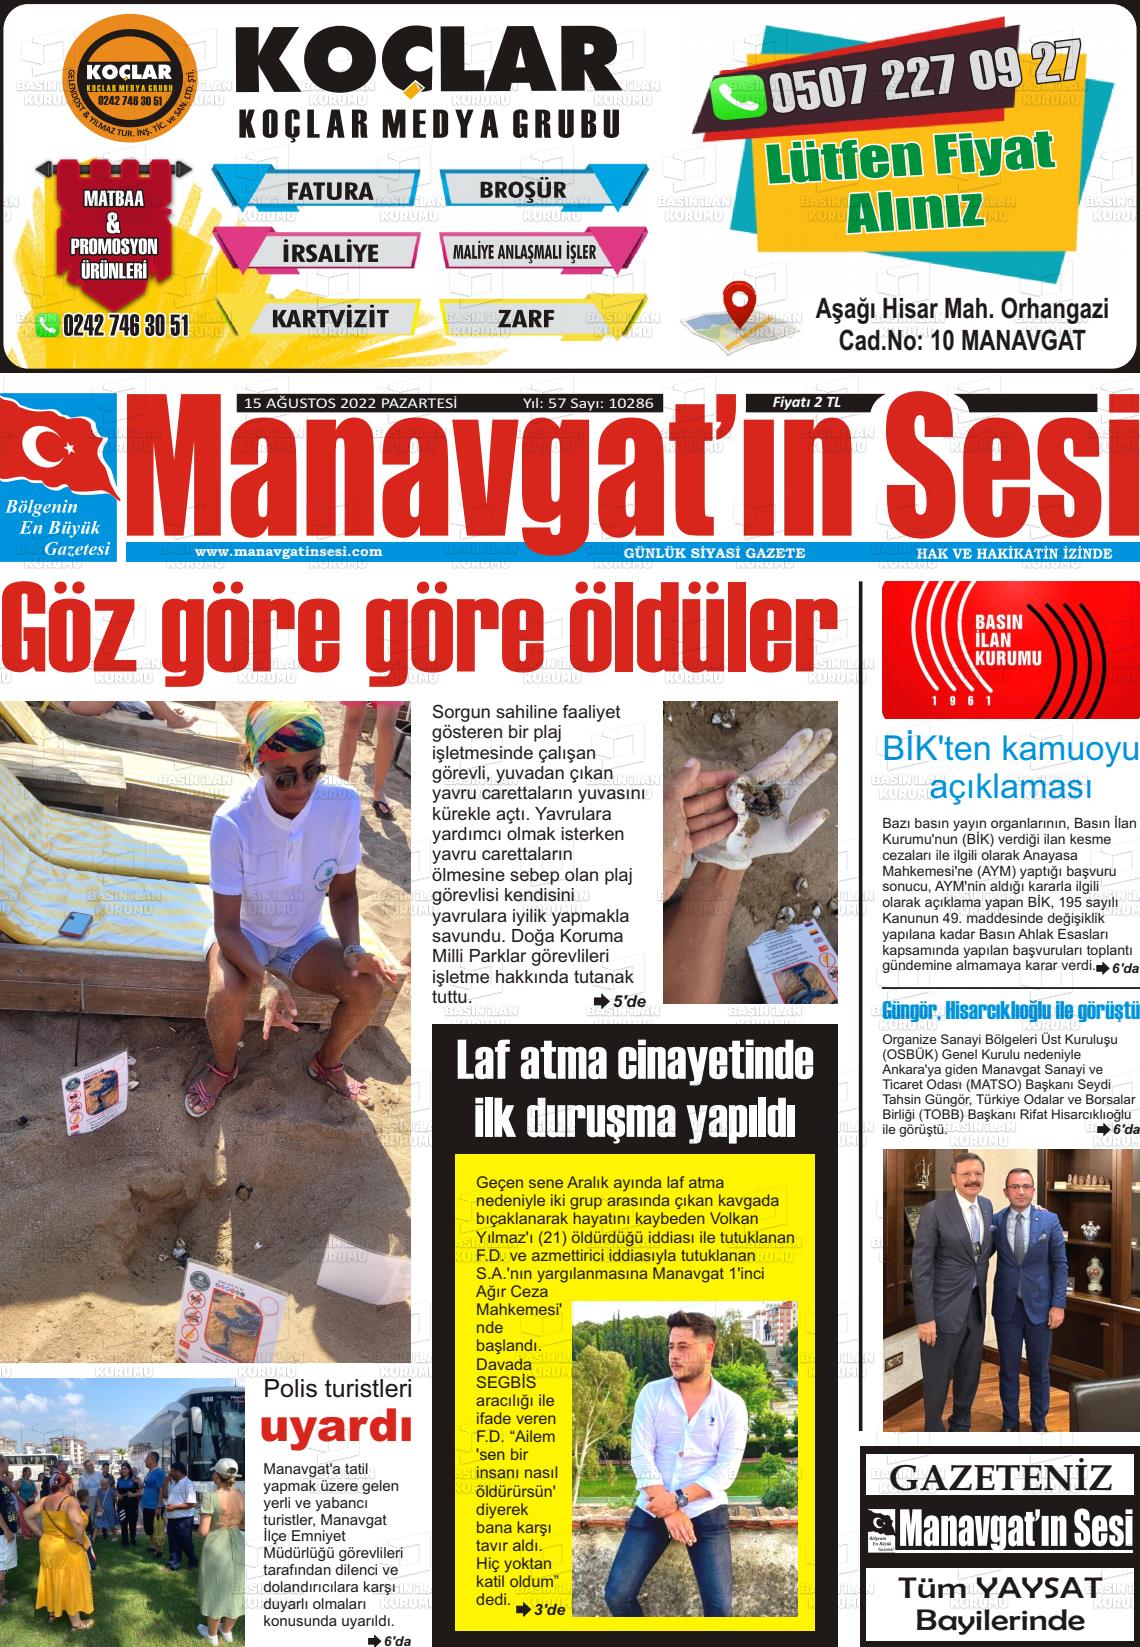 15 Ağustos 2022 Manavgat'ın Sesi Gazete Manşeti